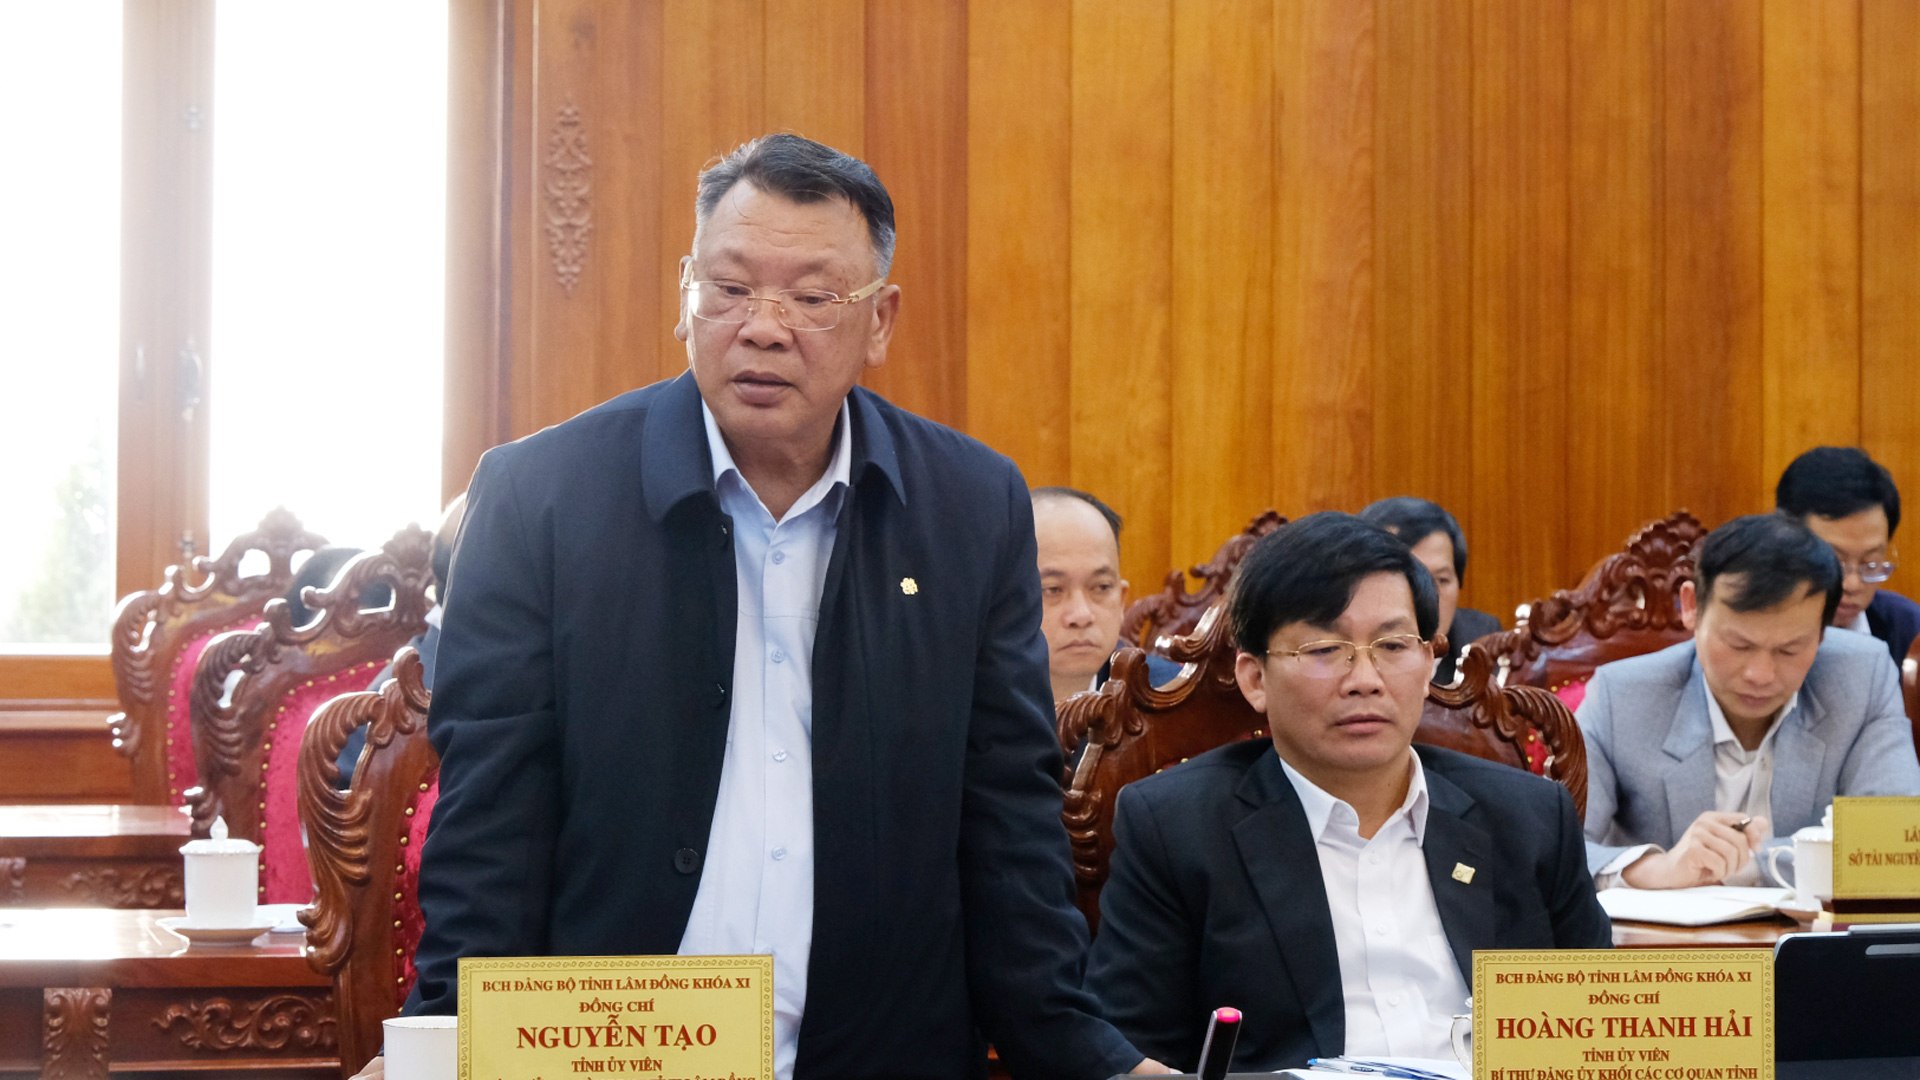 Đồng chí Nguyễn Tạo – Phó trưởng Đoàn Đại biểu Quốc hội tỉnh đóng góp ý kiến tại hội nghị